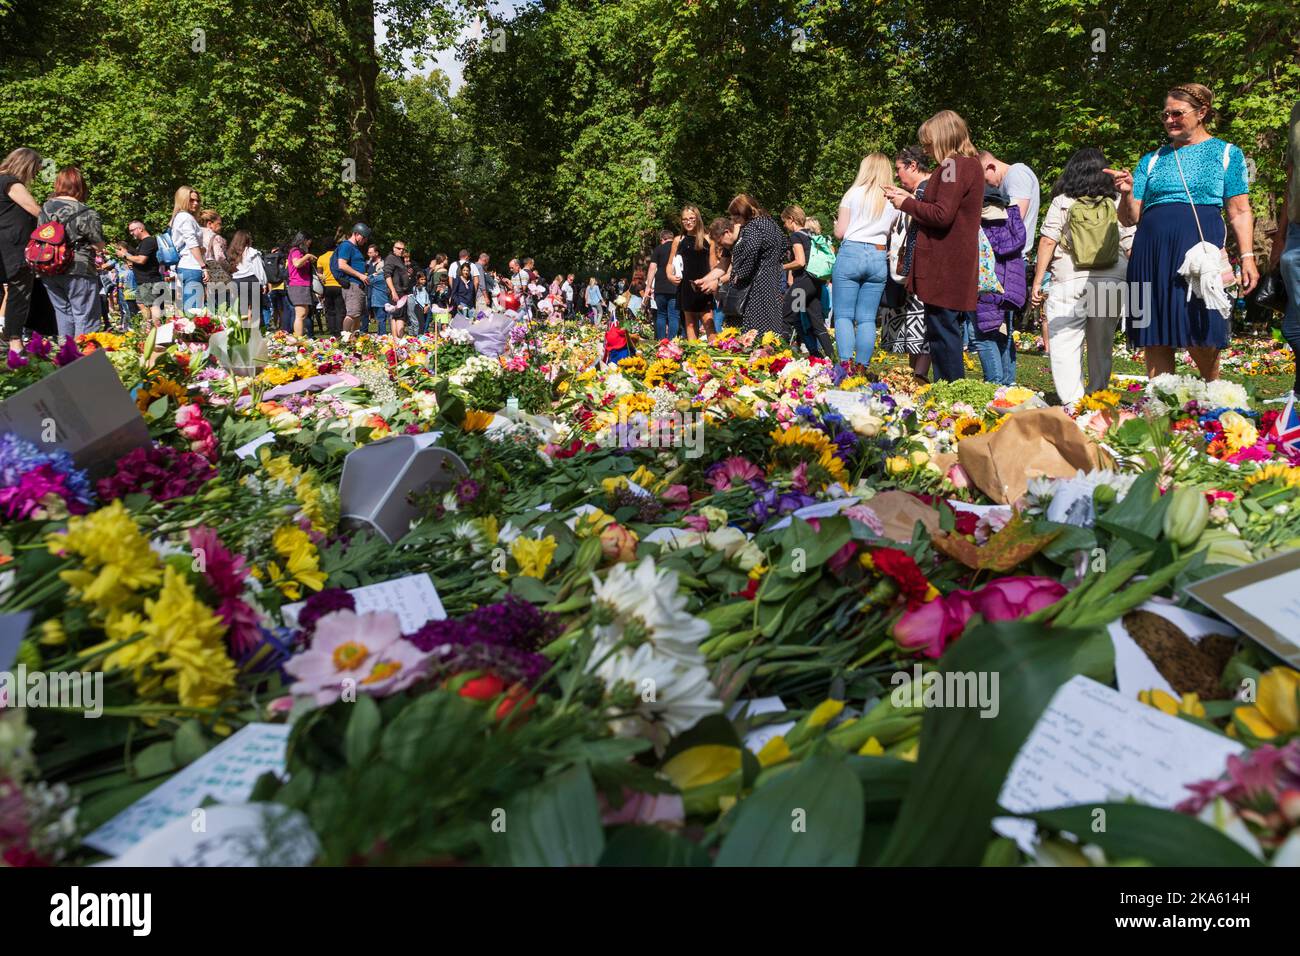 Persone che osservano i tributi floreali a Green Park, lasciati dai lutto per segnare la morte della Regina Elisabetta II. Green Park, Londra, Regno Unito. 11 settembre 2022 Foto Stock